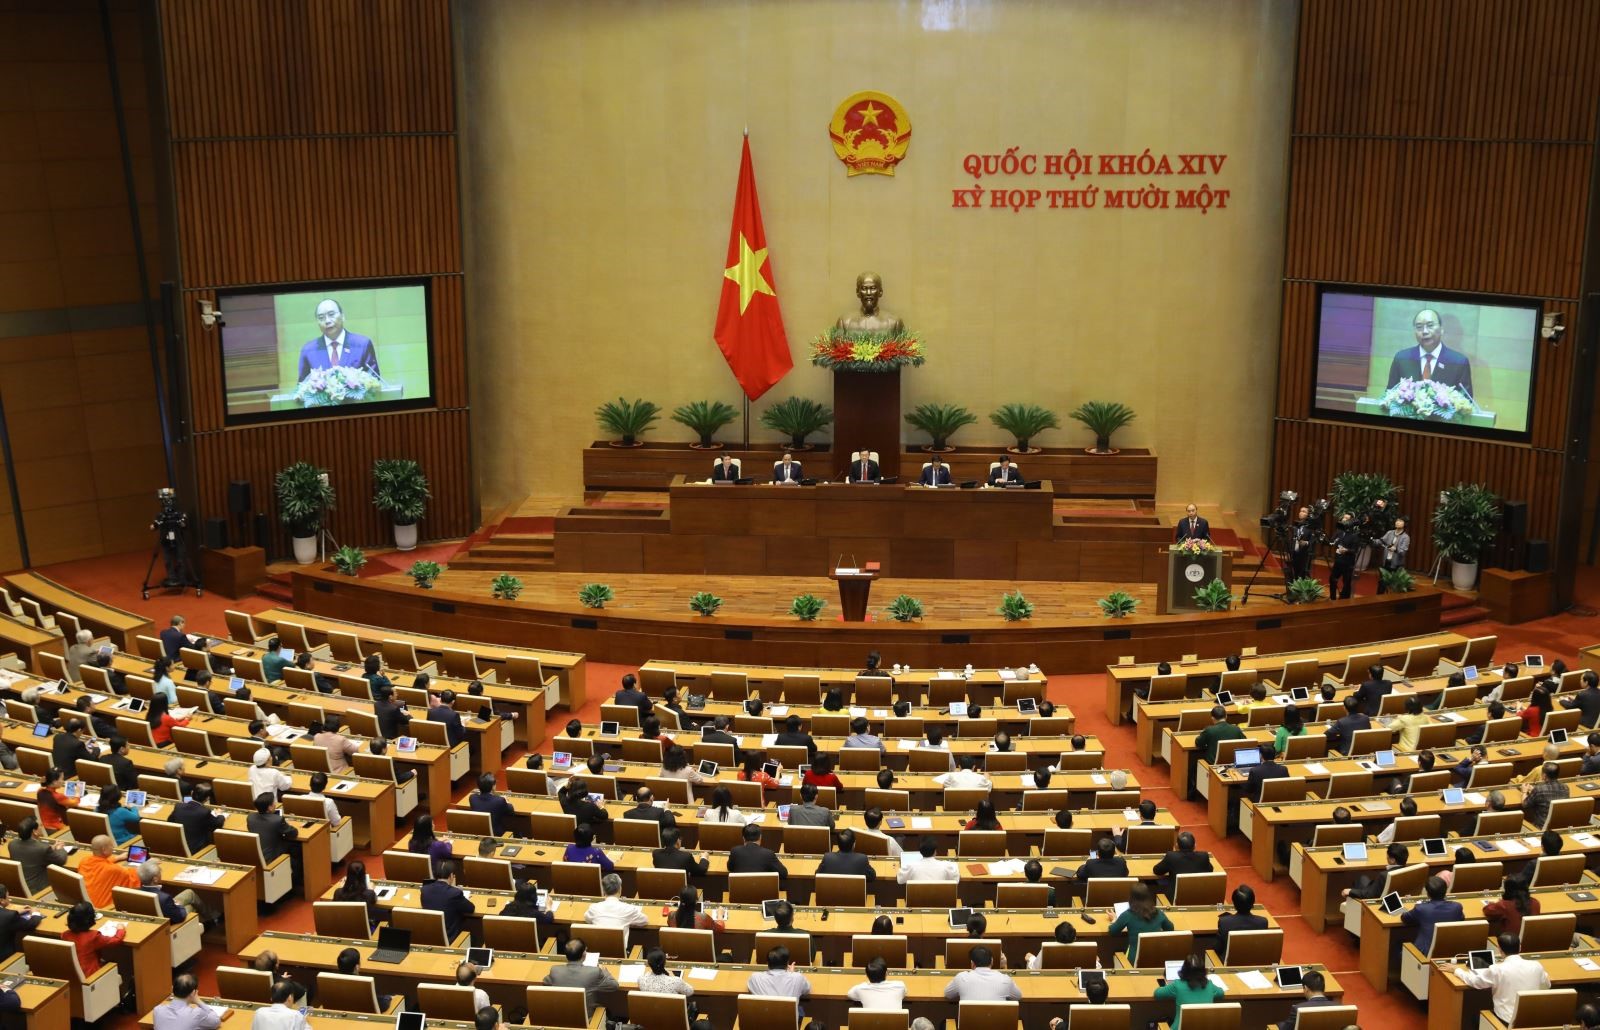 Chủ tịch nước Nguyễn Xuân Phúc phát biểu nhậm chức trước Quốc hội sáng 5/4/2021. Ảnh: Văn Điệp - TTXVN